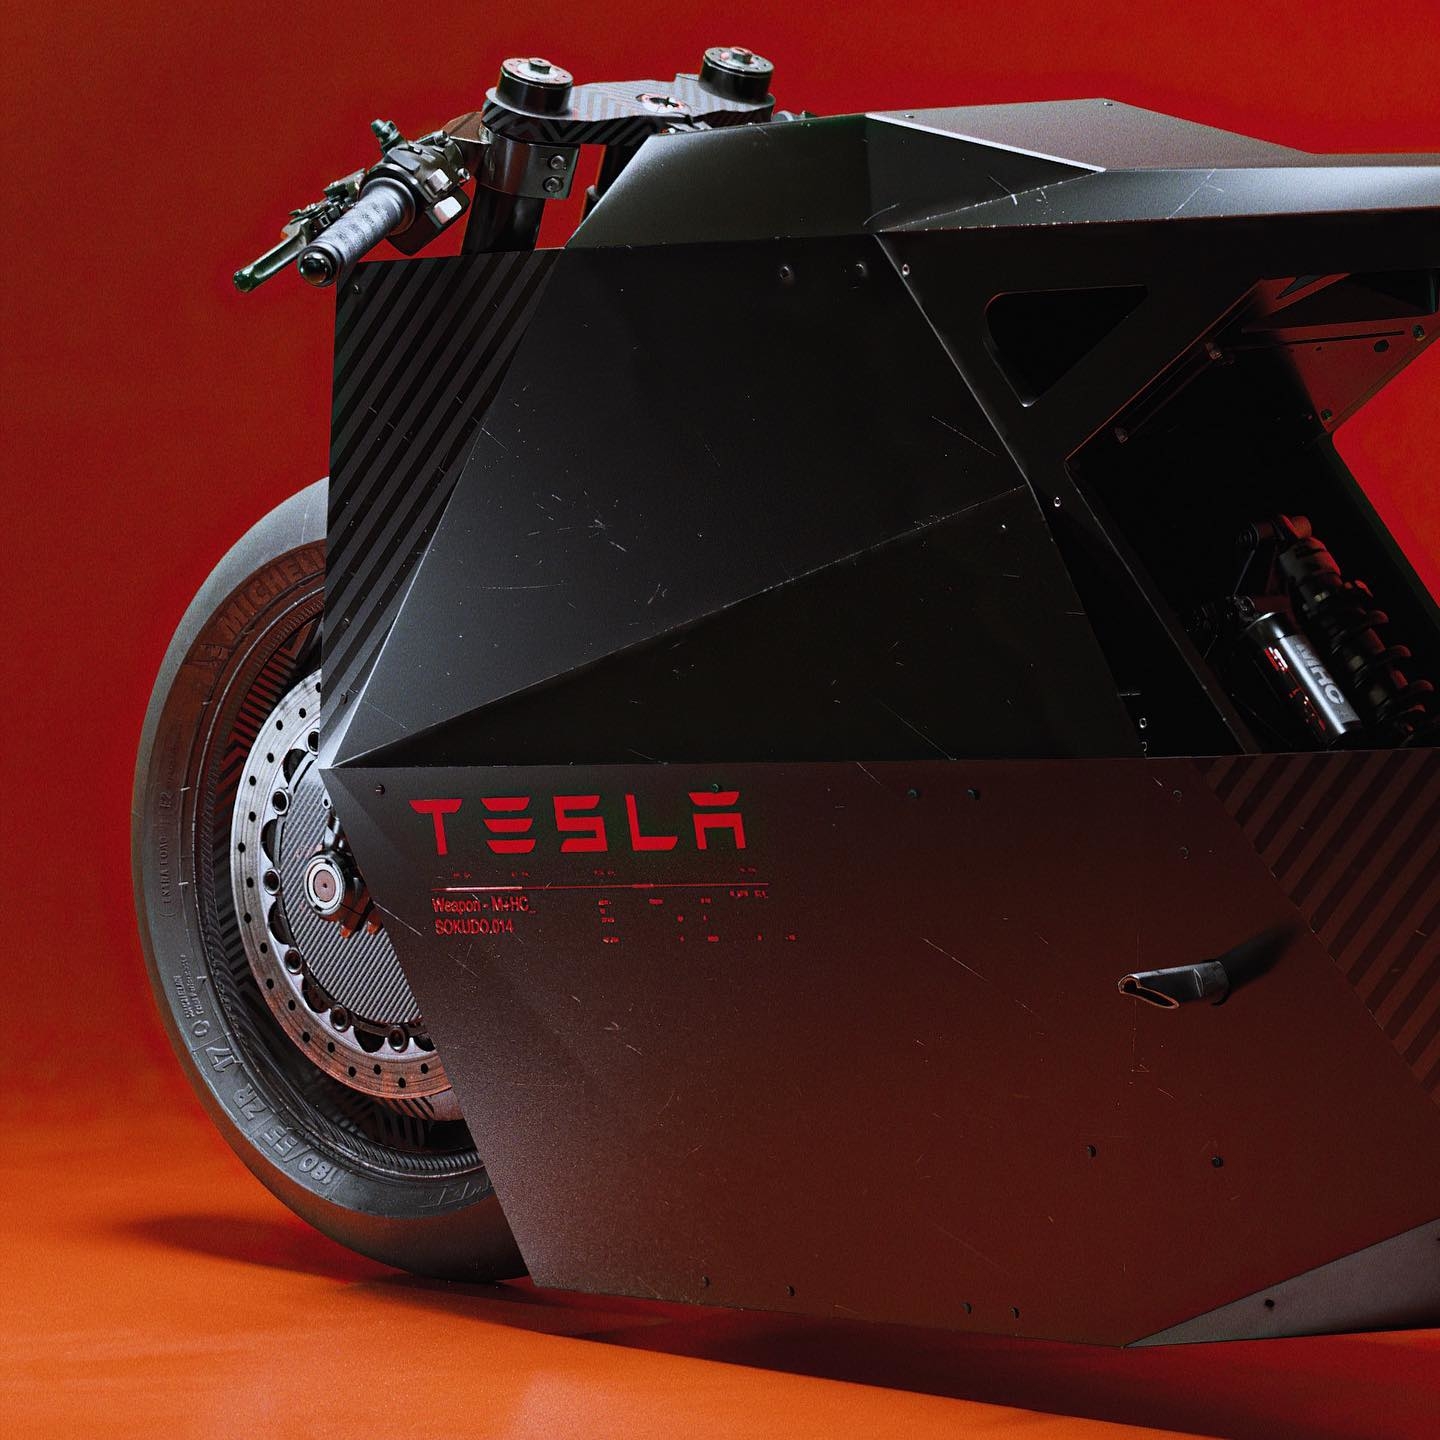 Un vistazo a la 'nueva' moto eléctrica de Tesla, la Tesla Sokudo